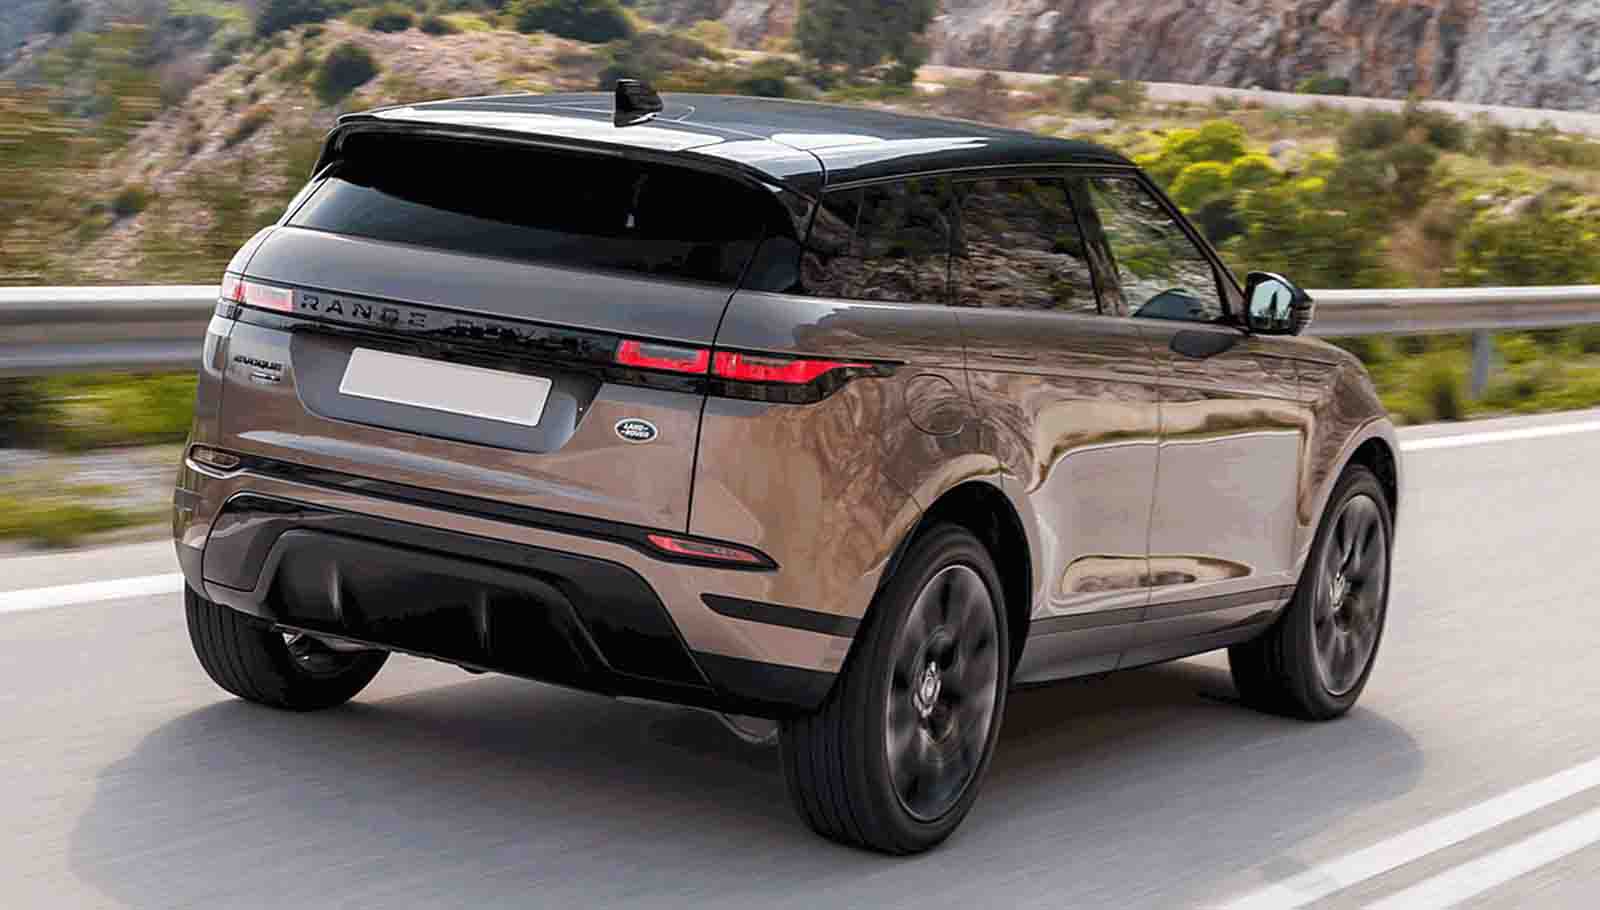 Land Rover-Evoque